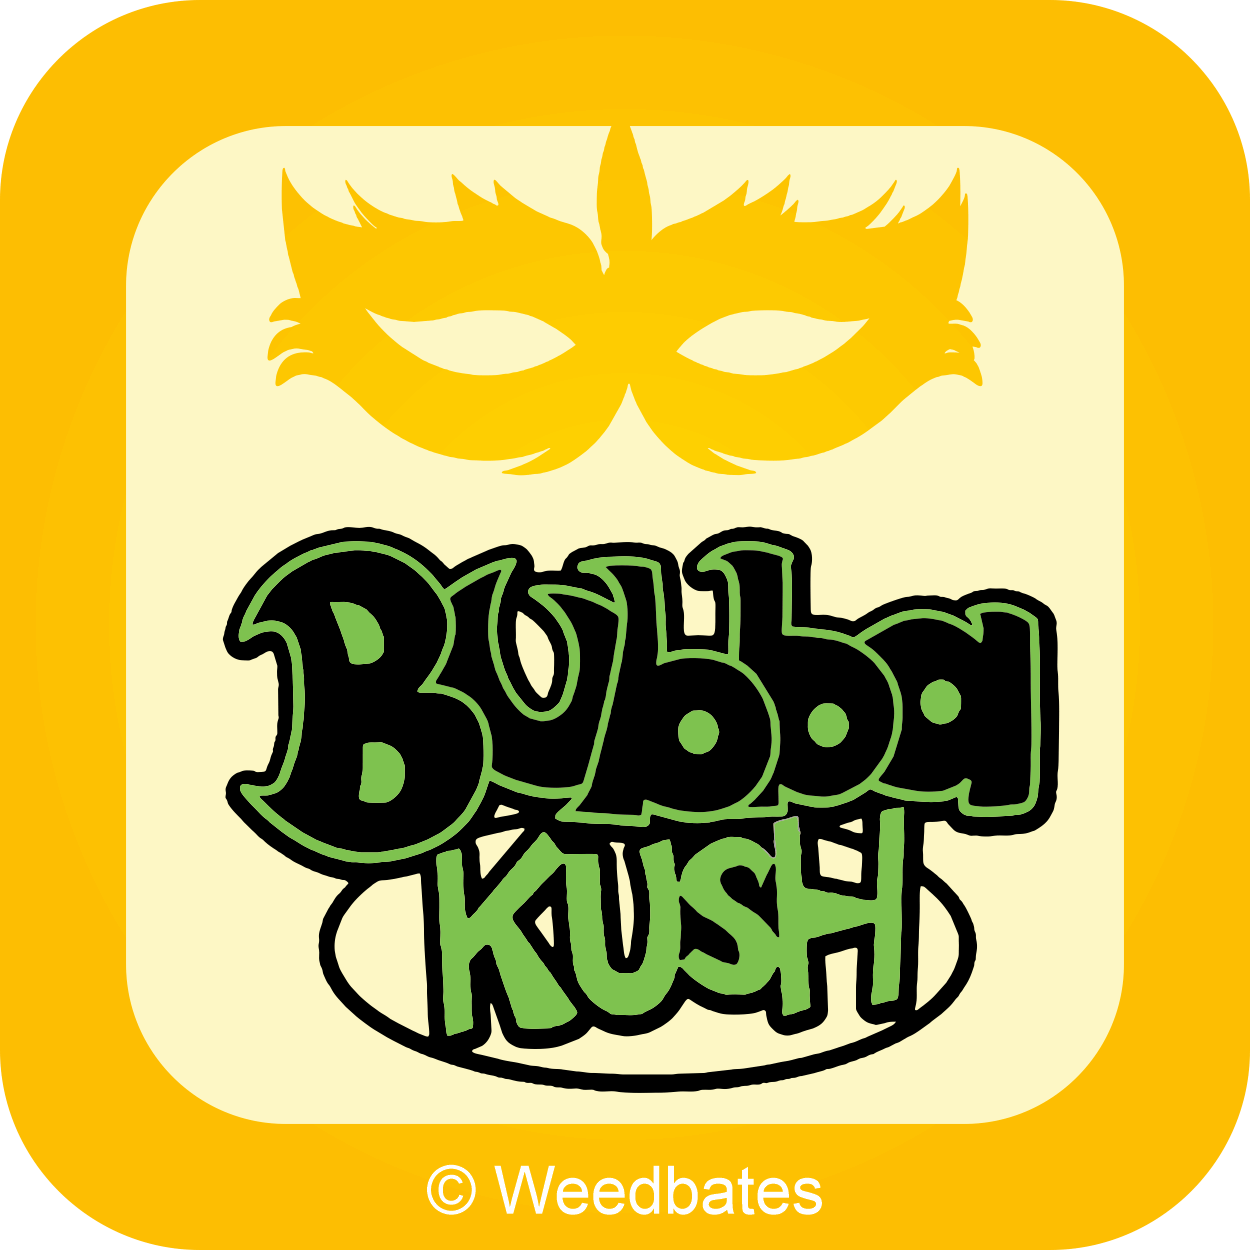 Bubba Kush cannabis strain